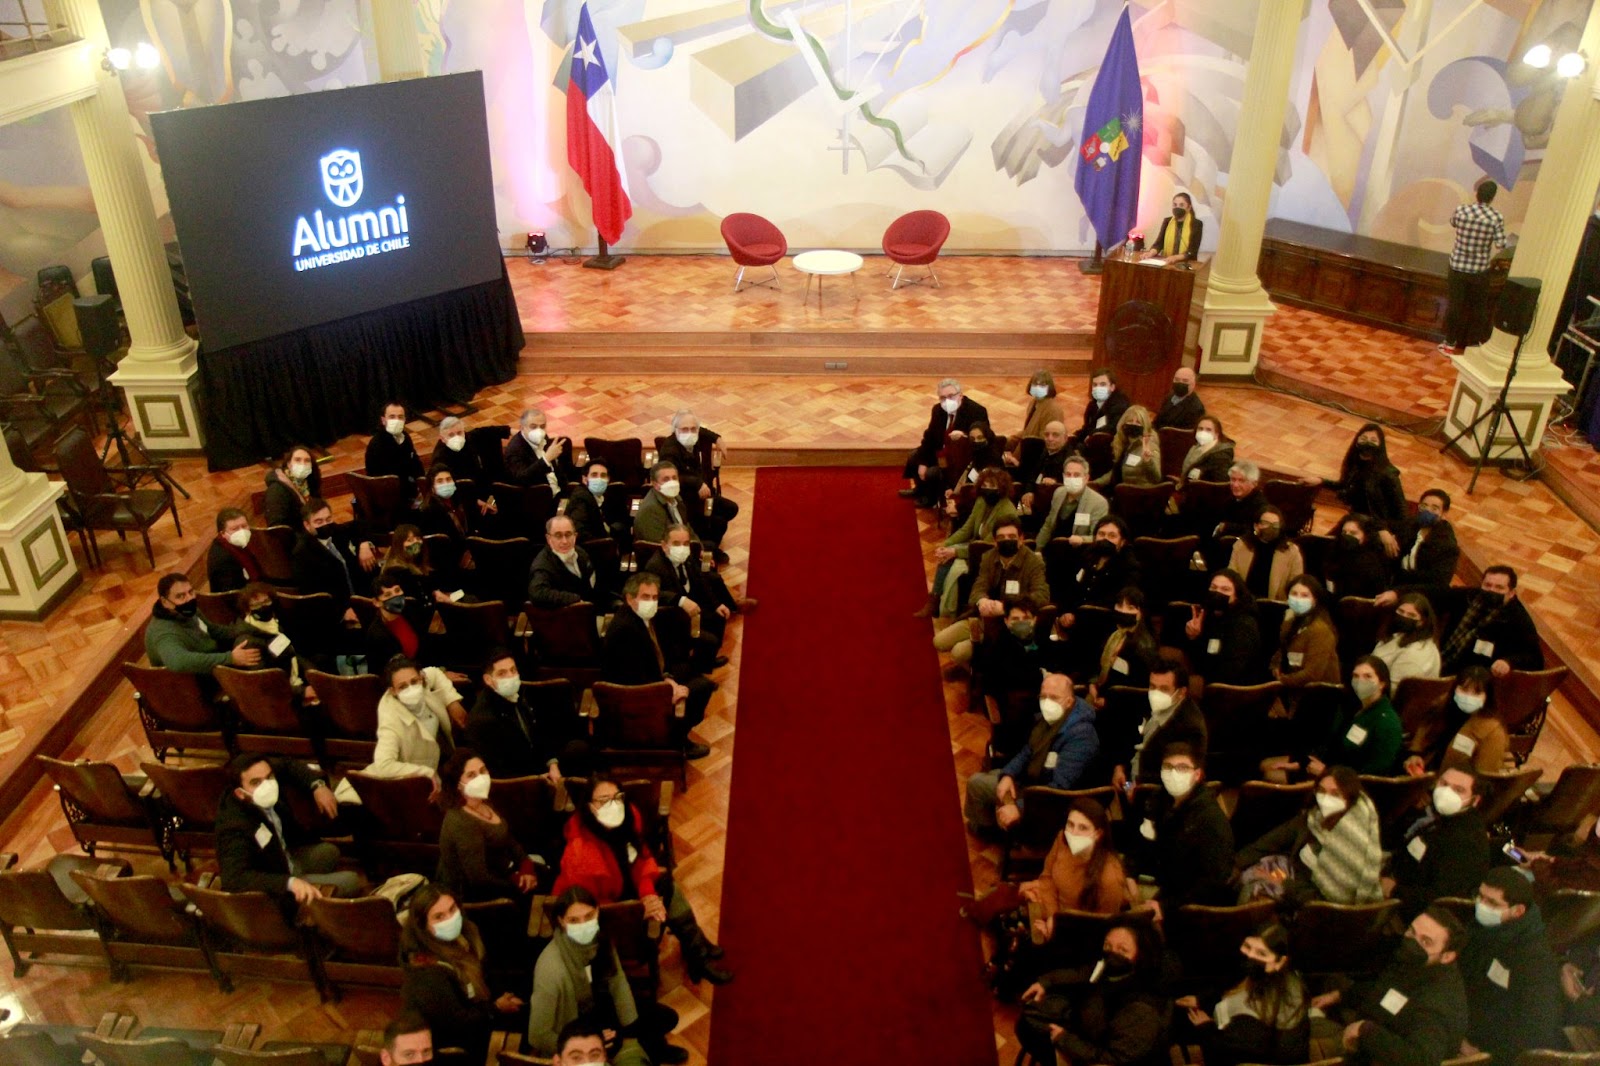  Universidad de Chile celebró el Primer Encuentro de su Comunidad alumni